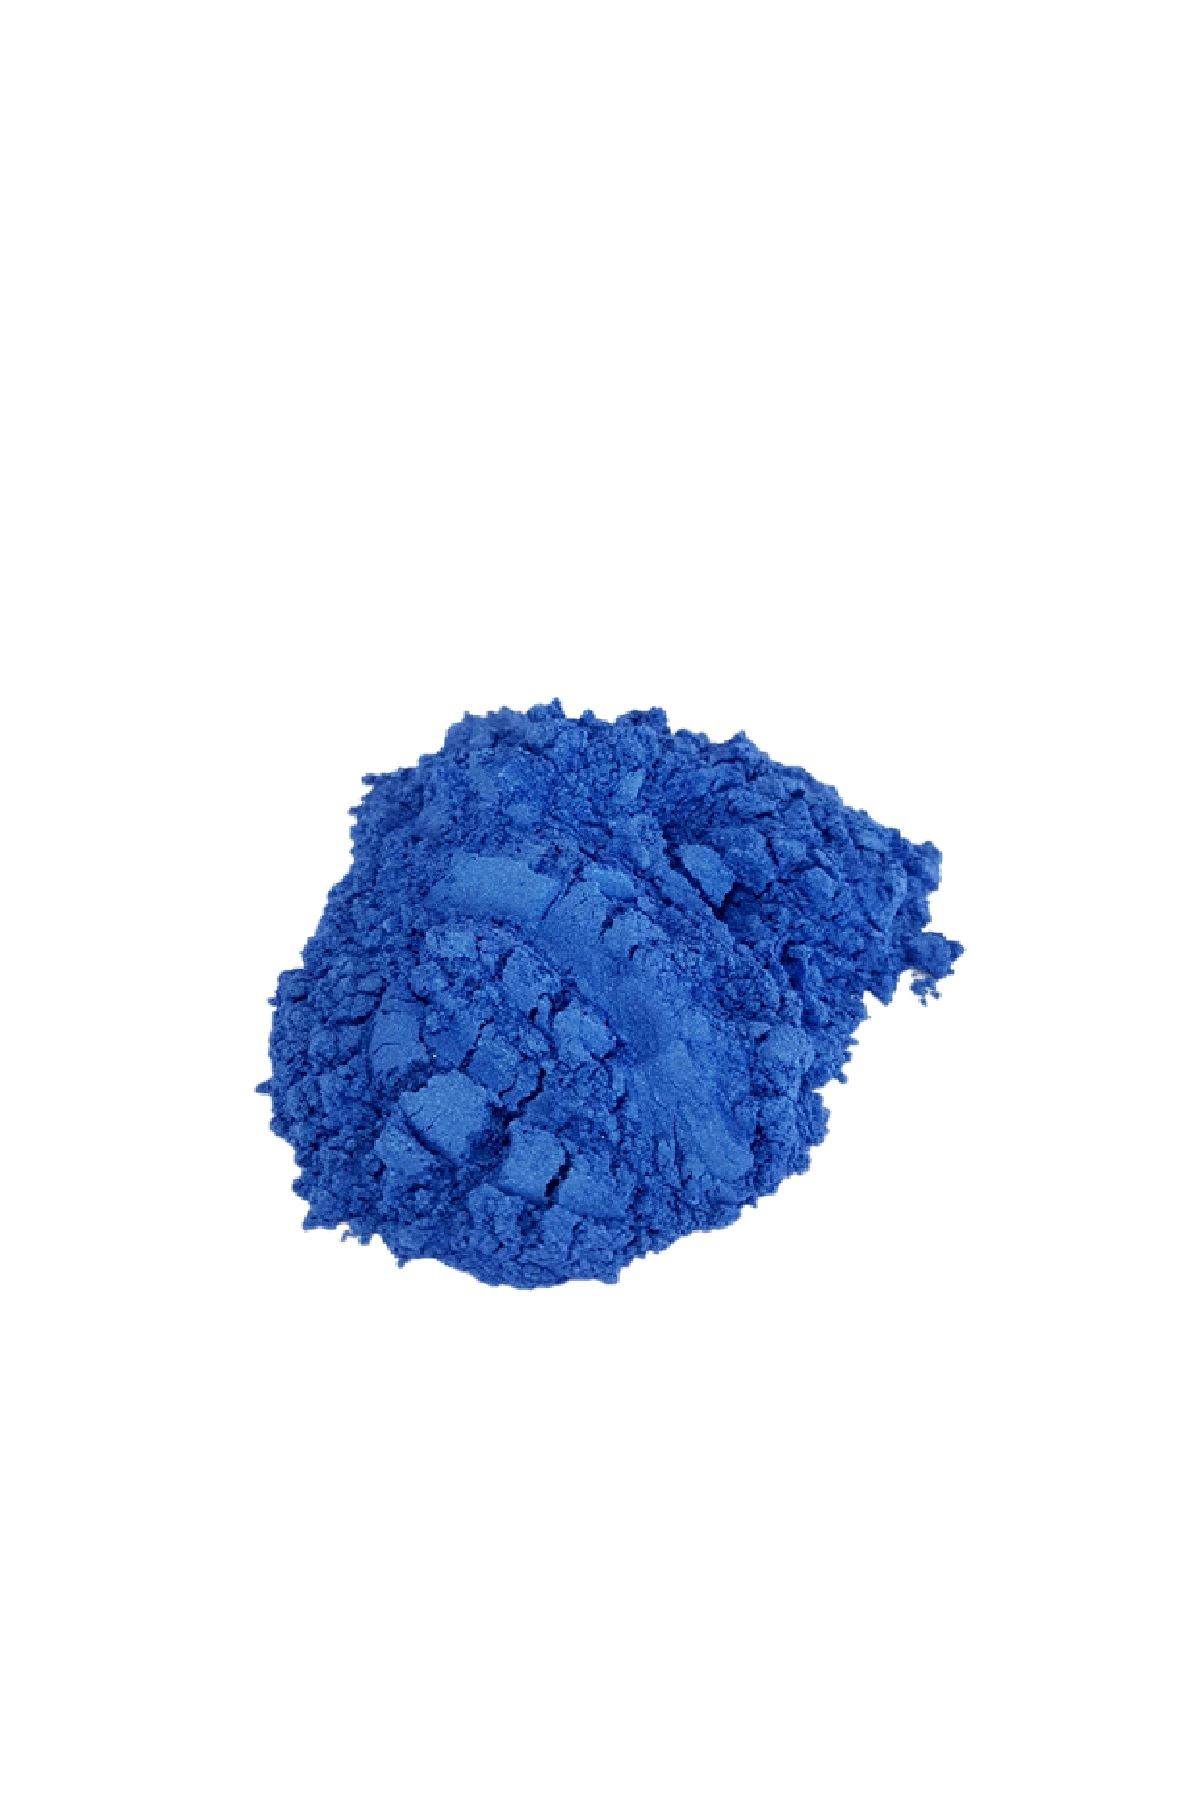 Brtr 10 Gr Dark Ocean Epoksi Metalik Toz Pigment (Koyu Mavi)